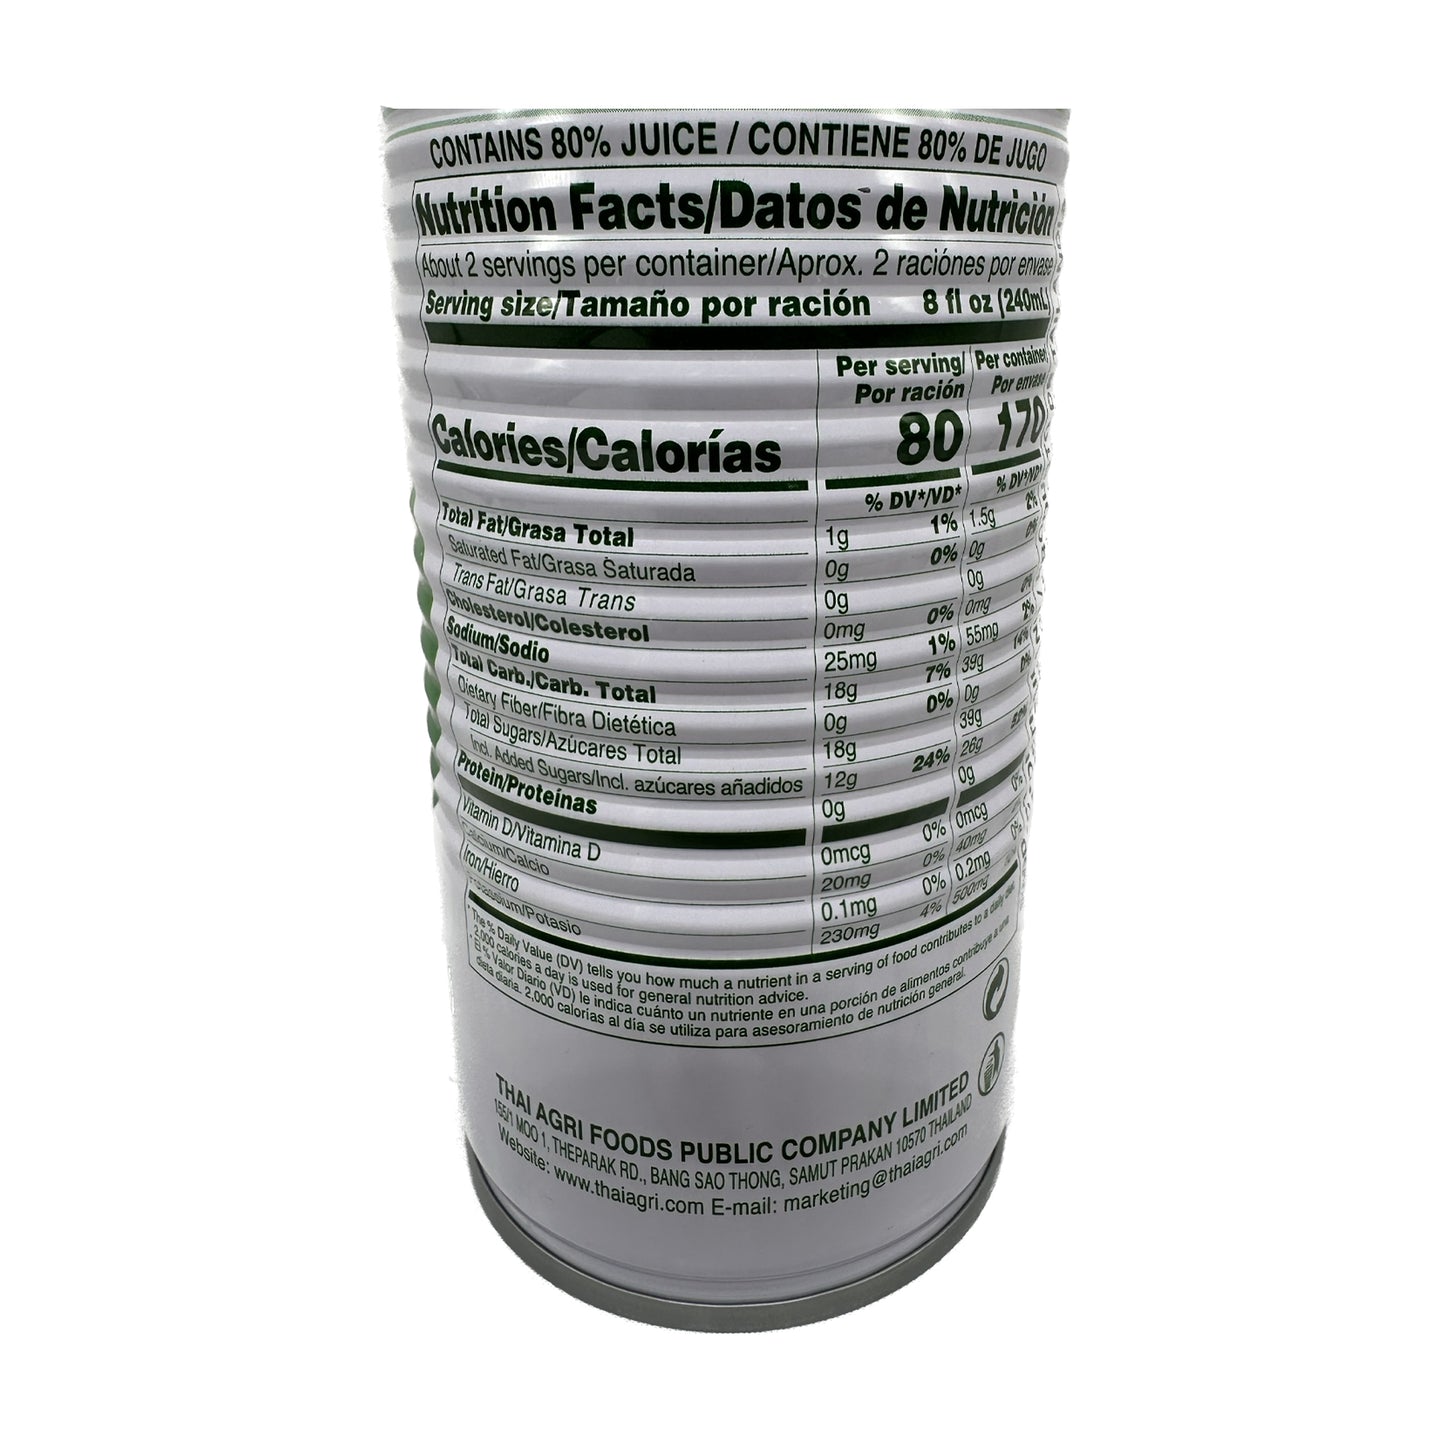 FOCO Coconut Juice -17.60 oz